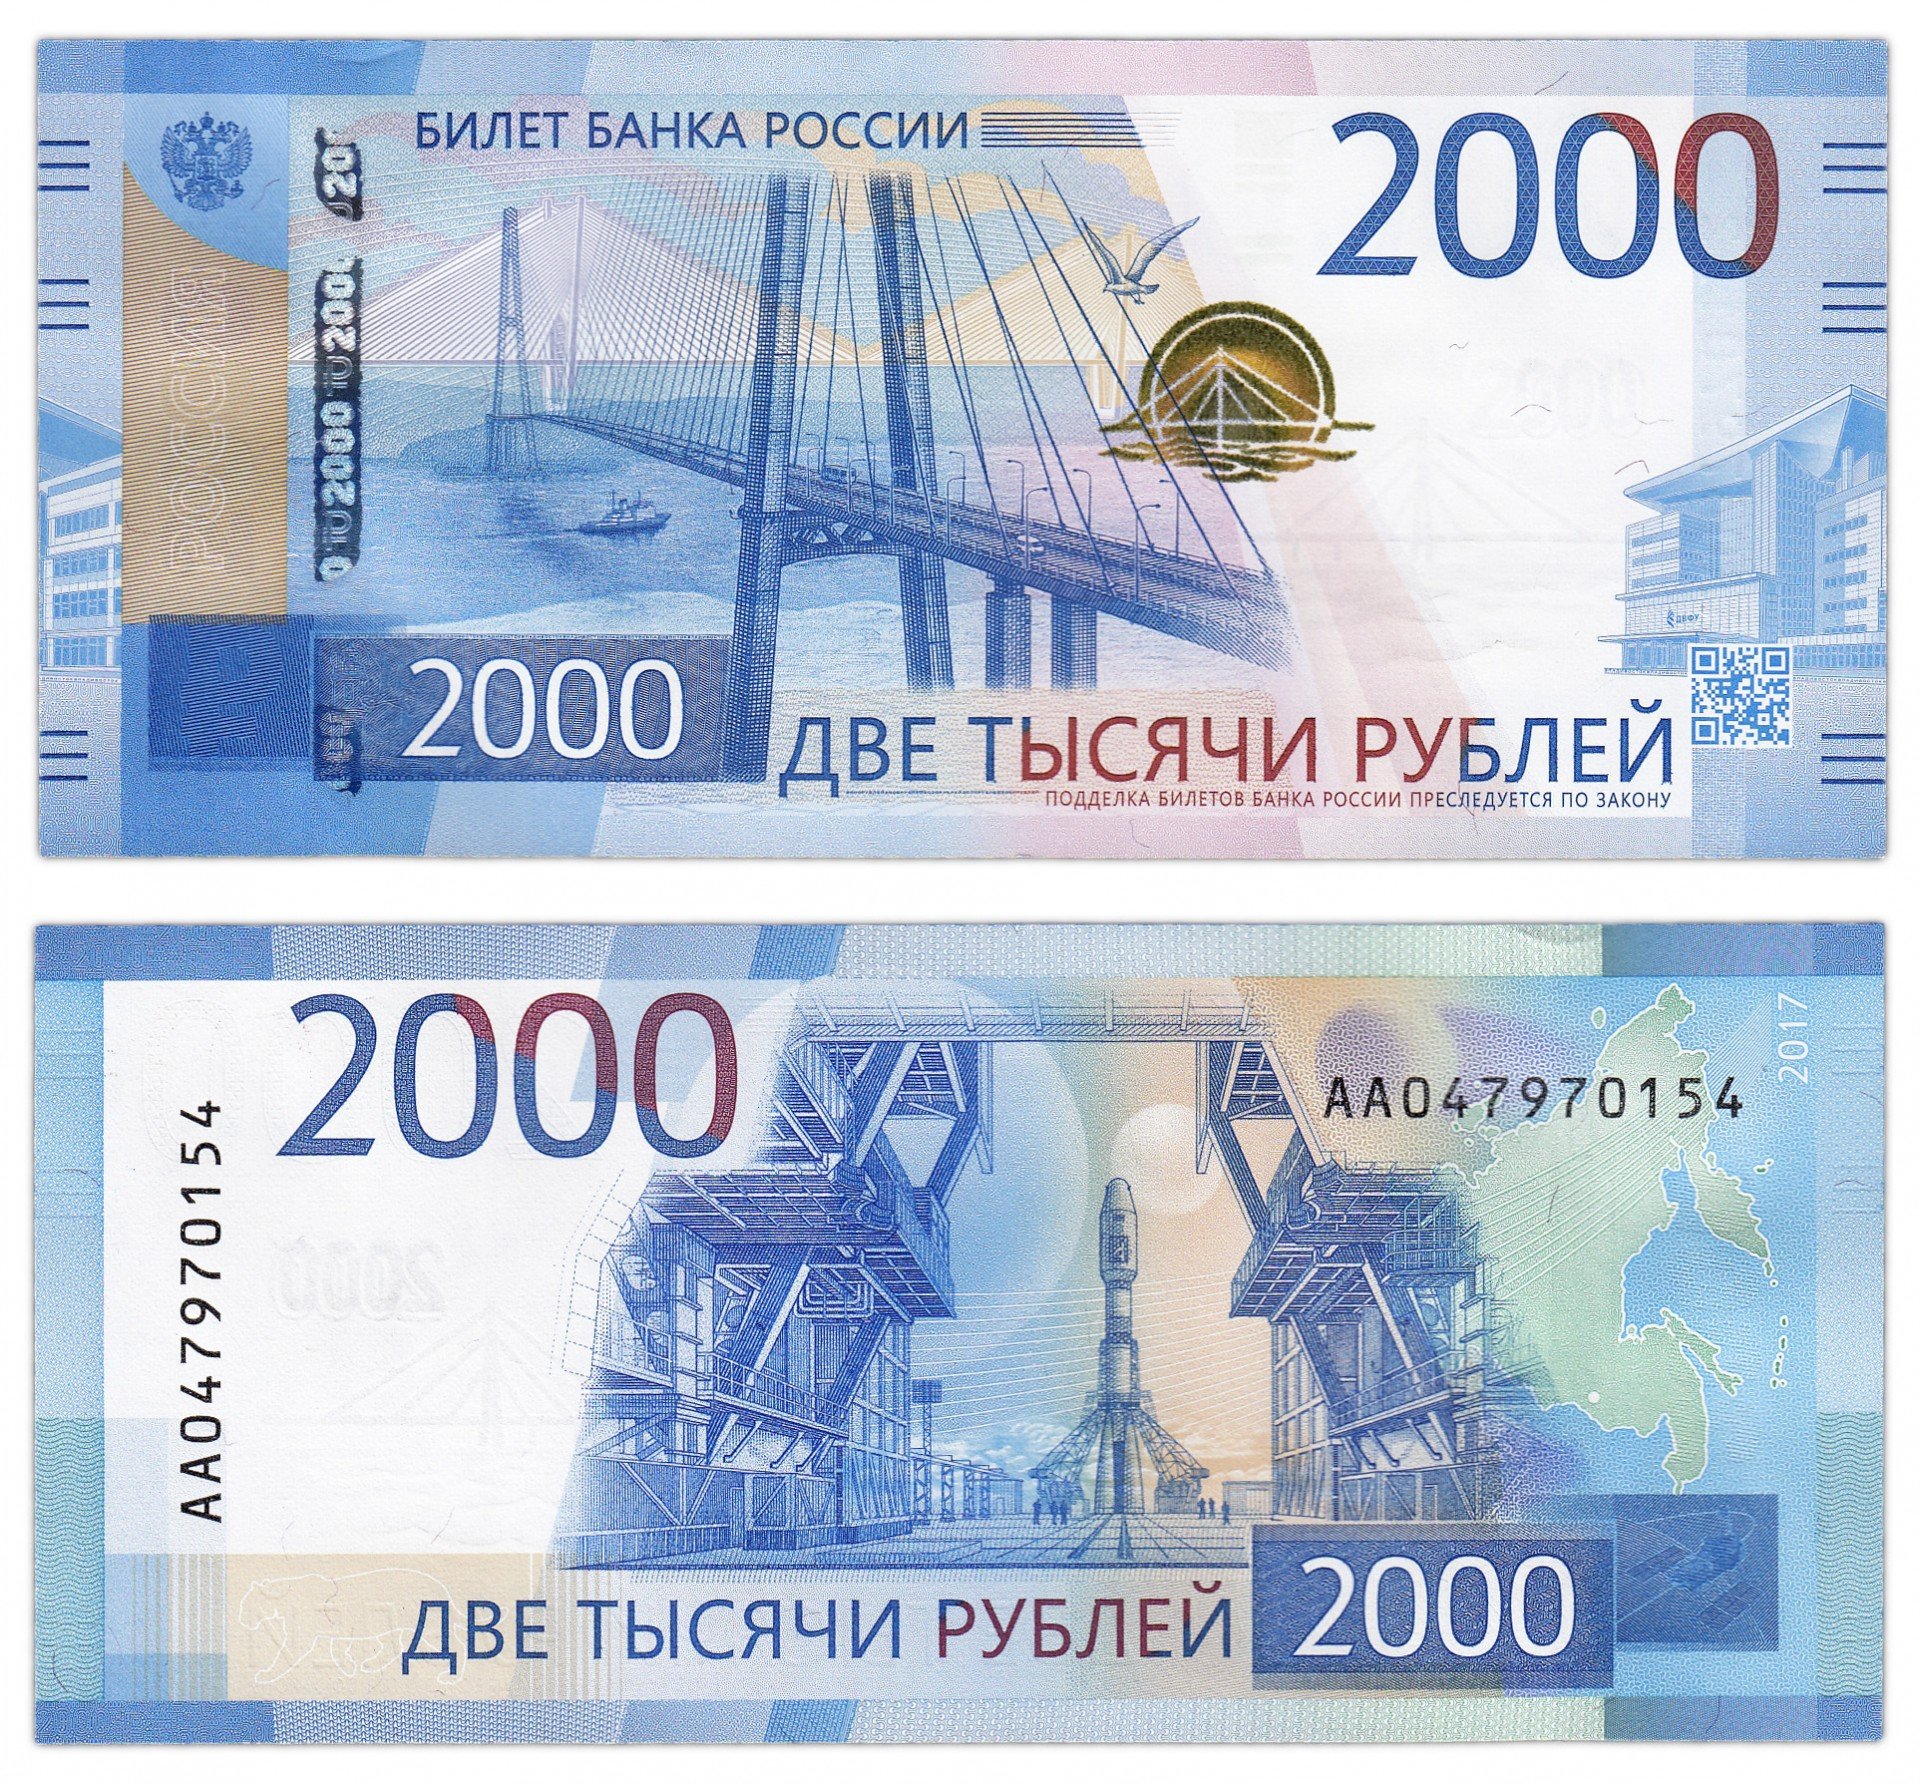 Банкнота 2000 рублей 2017 стартовая серия АА стоимостью 2900 руб.